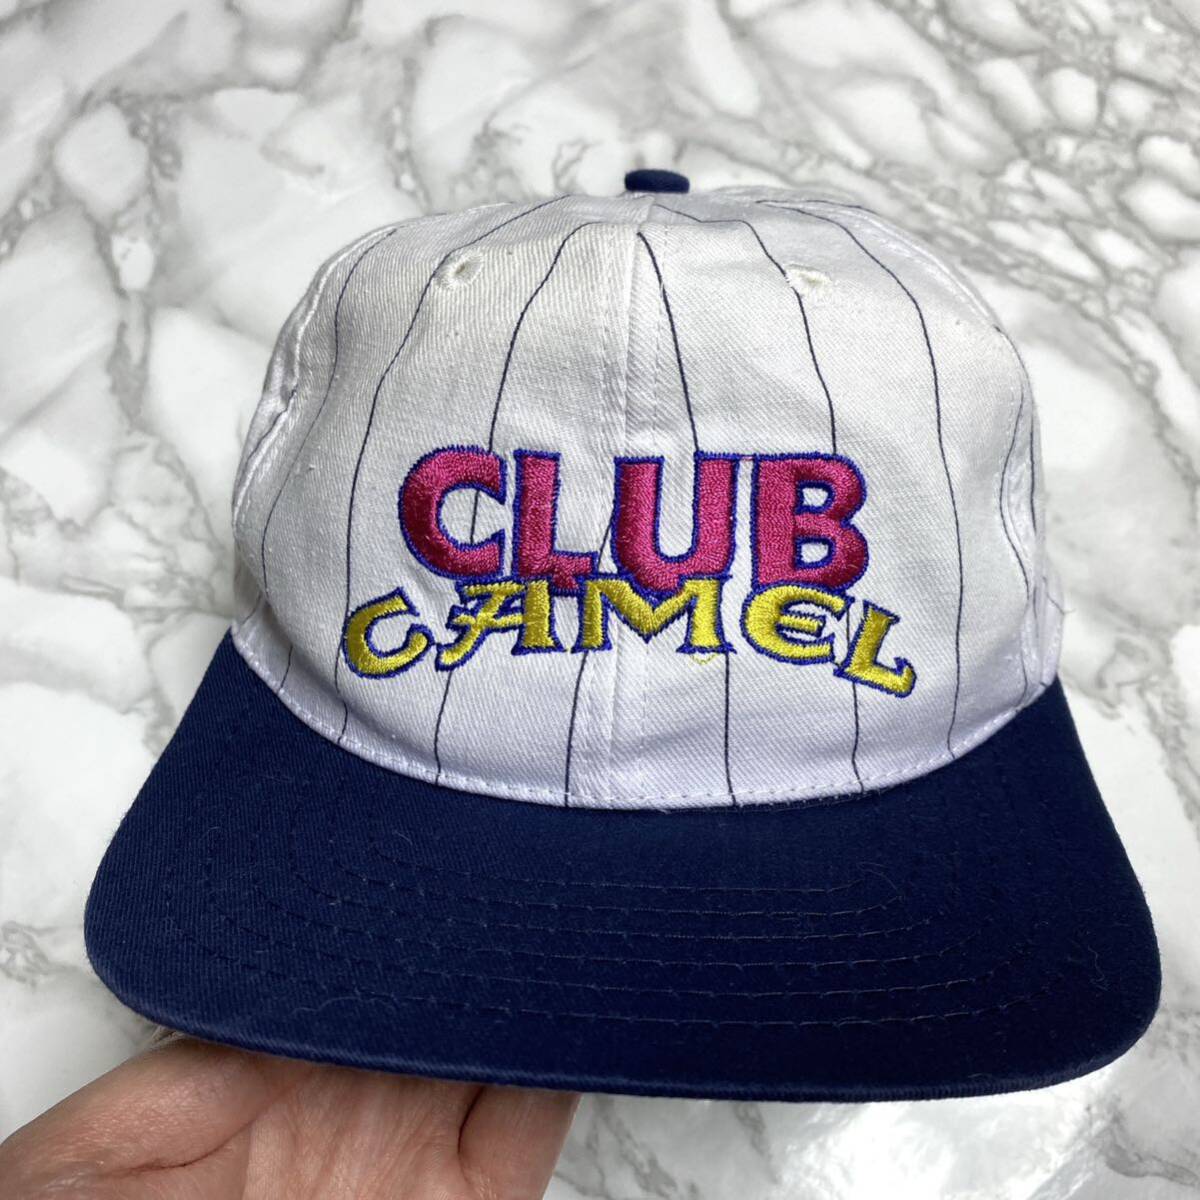 レア CLUB CAMEL cap キャップ 80s 90s プロモ ビンテージ 帽子 古着 ヴィンテージ